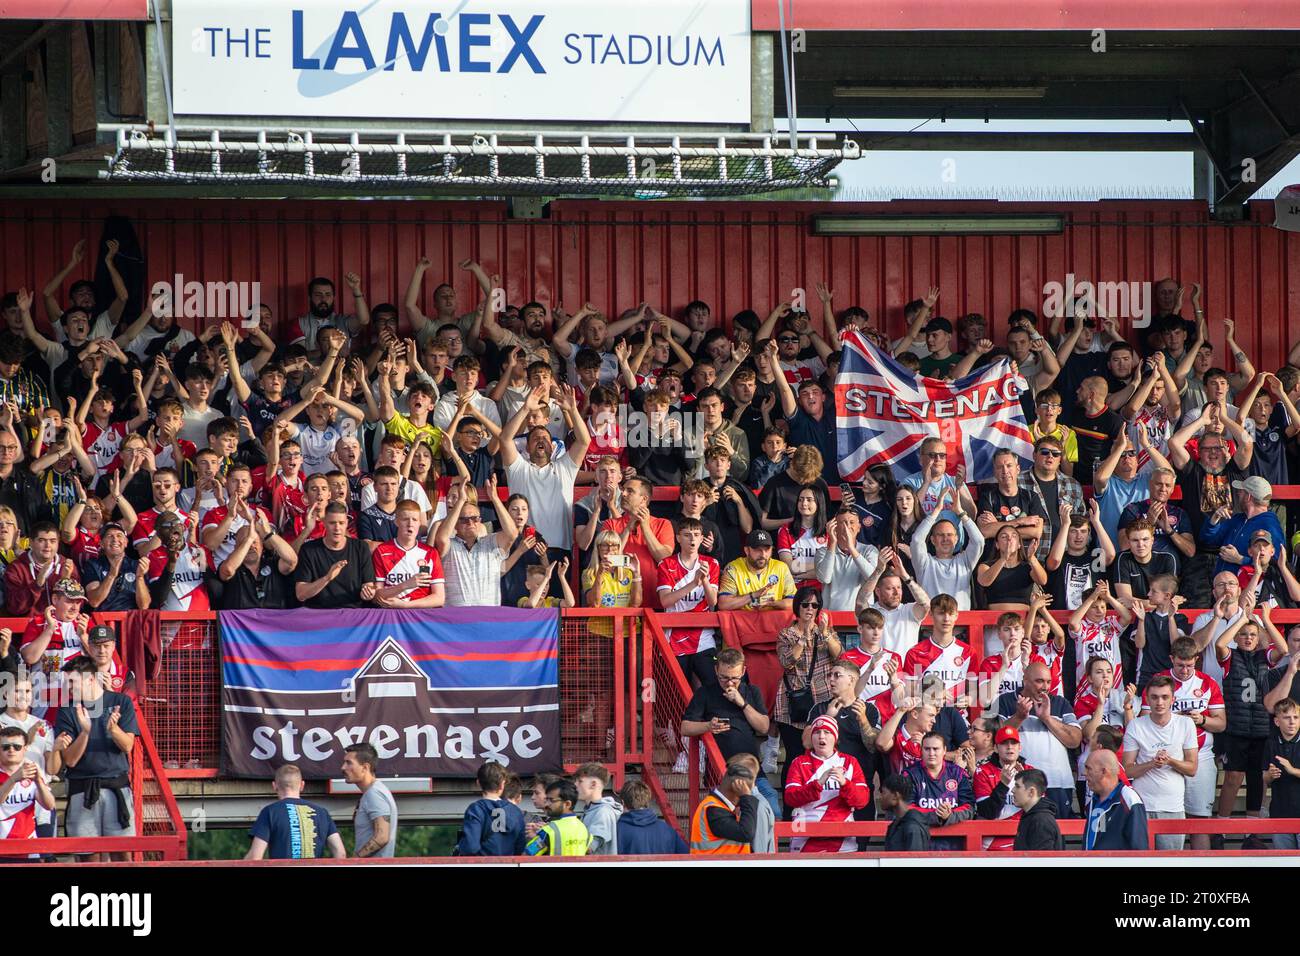 Vue générale des supporters du Stevenage FC et des supporters applaudissant, applaudissant et jubilant dans le stade East Terrace au Lamex Stadium Banque D'Images